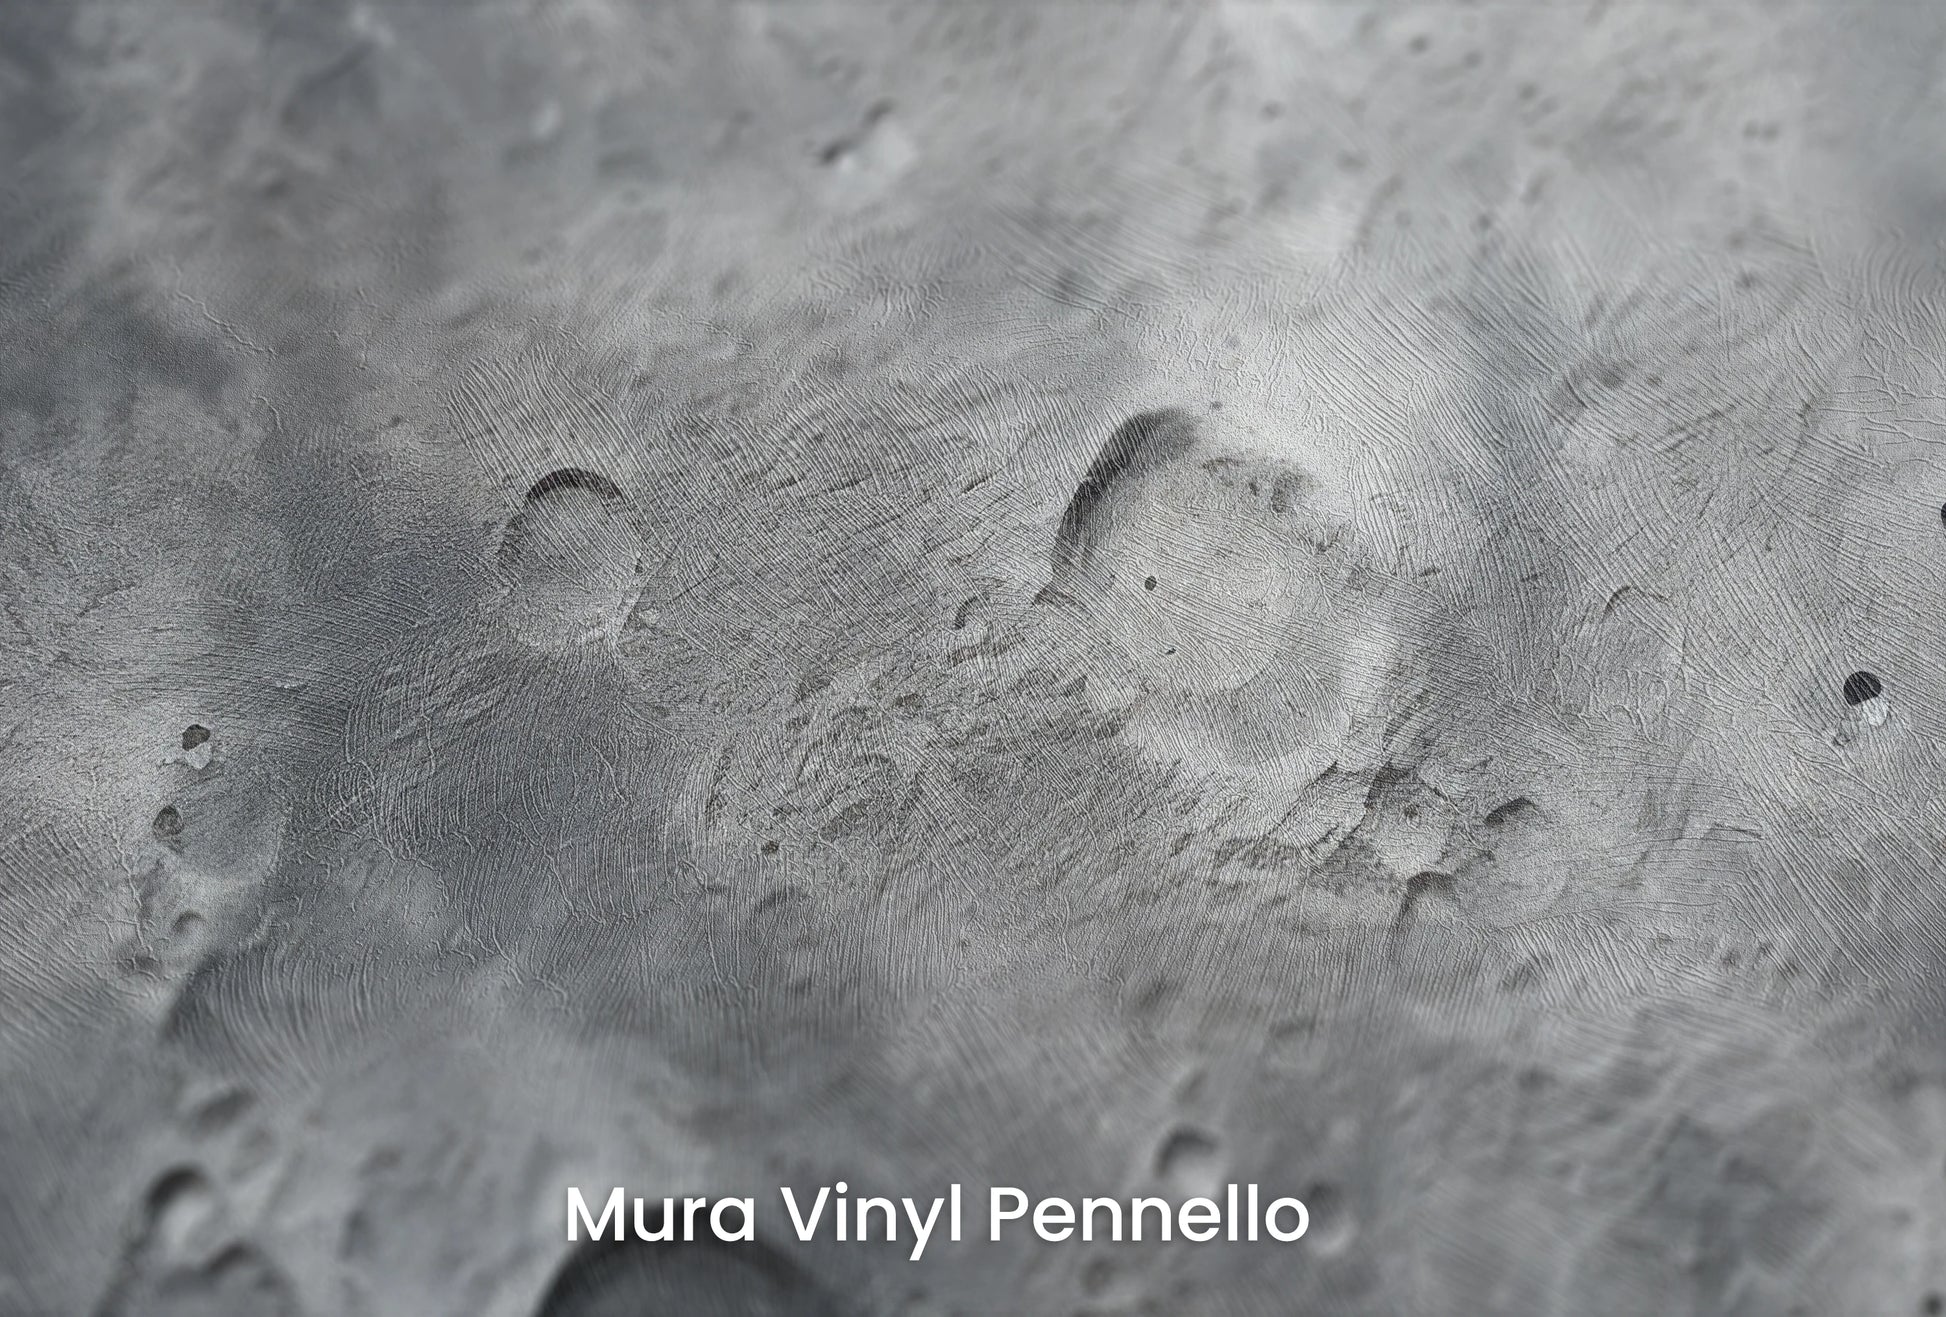 Zbliżenie na artystyczną fototapetę o nazwie Lunar Landscape #2 na podłożu Mura Vinyl Pennello - faktura pociągnięć pędzla malarskiego.